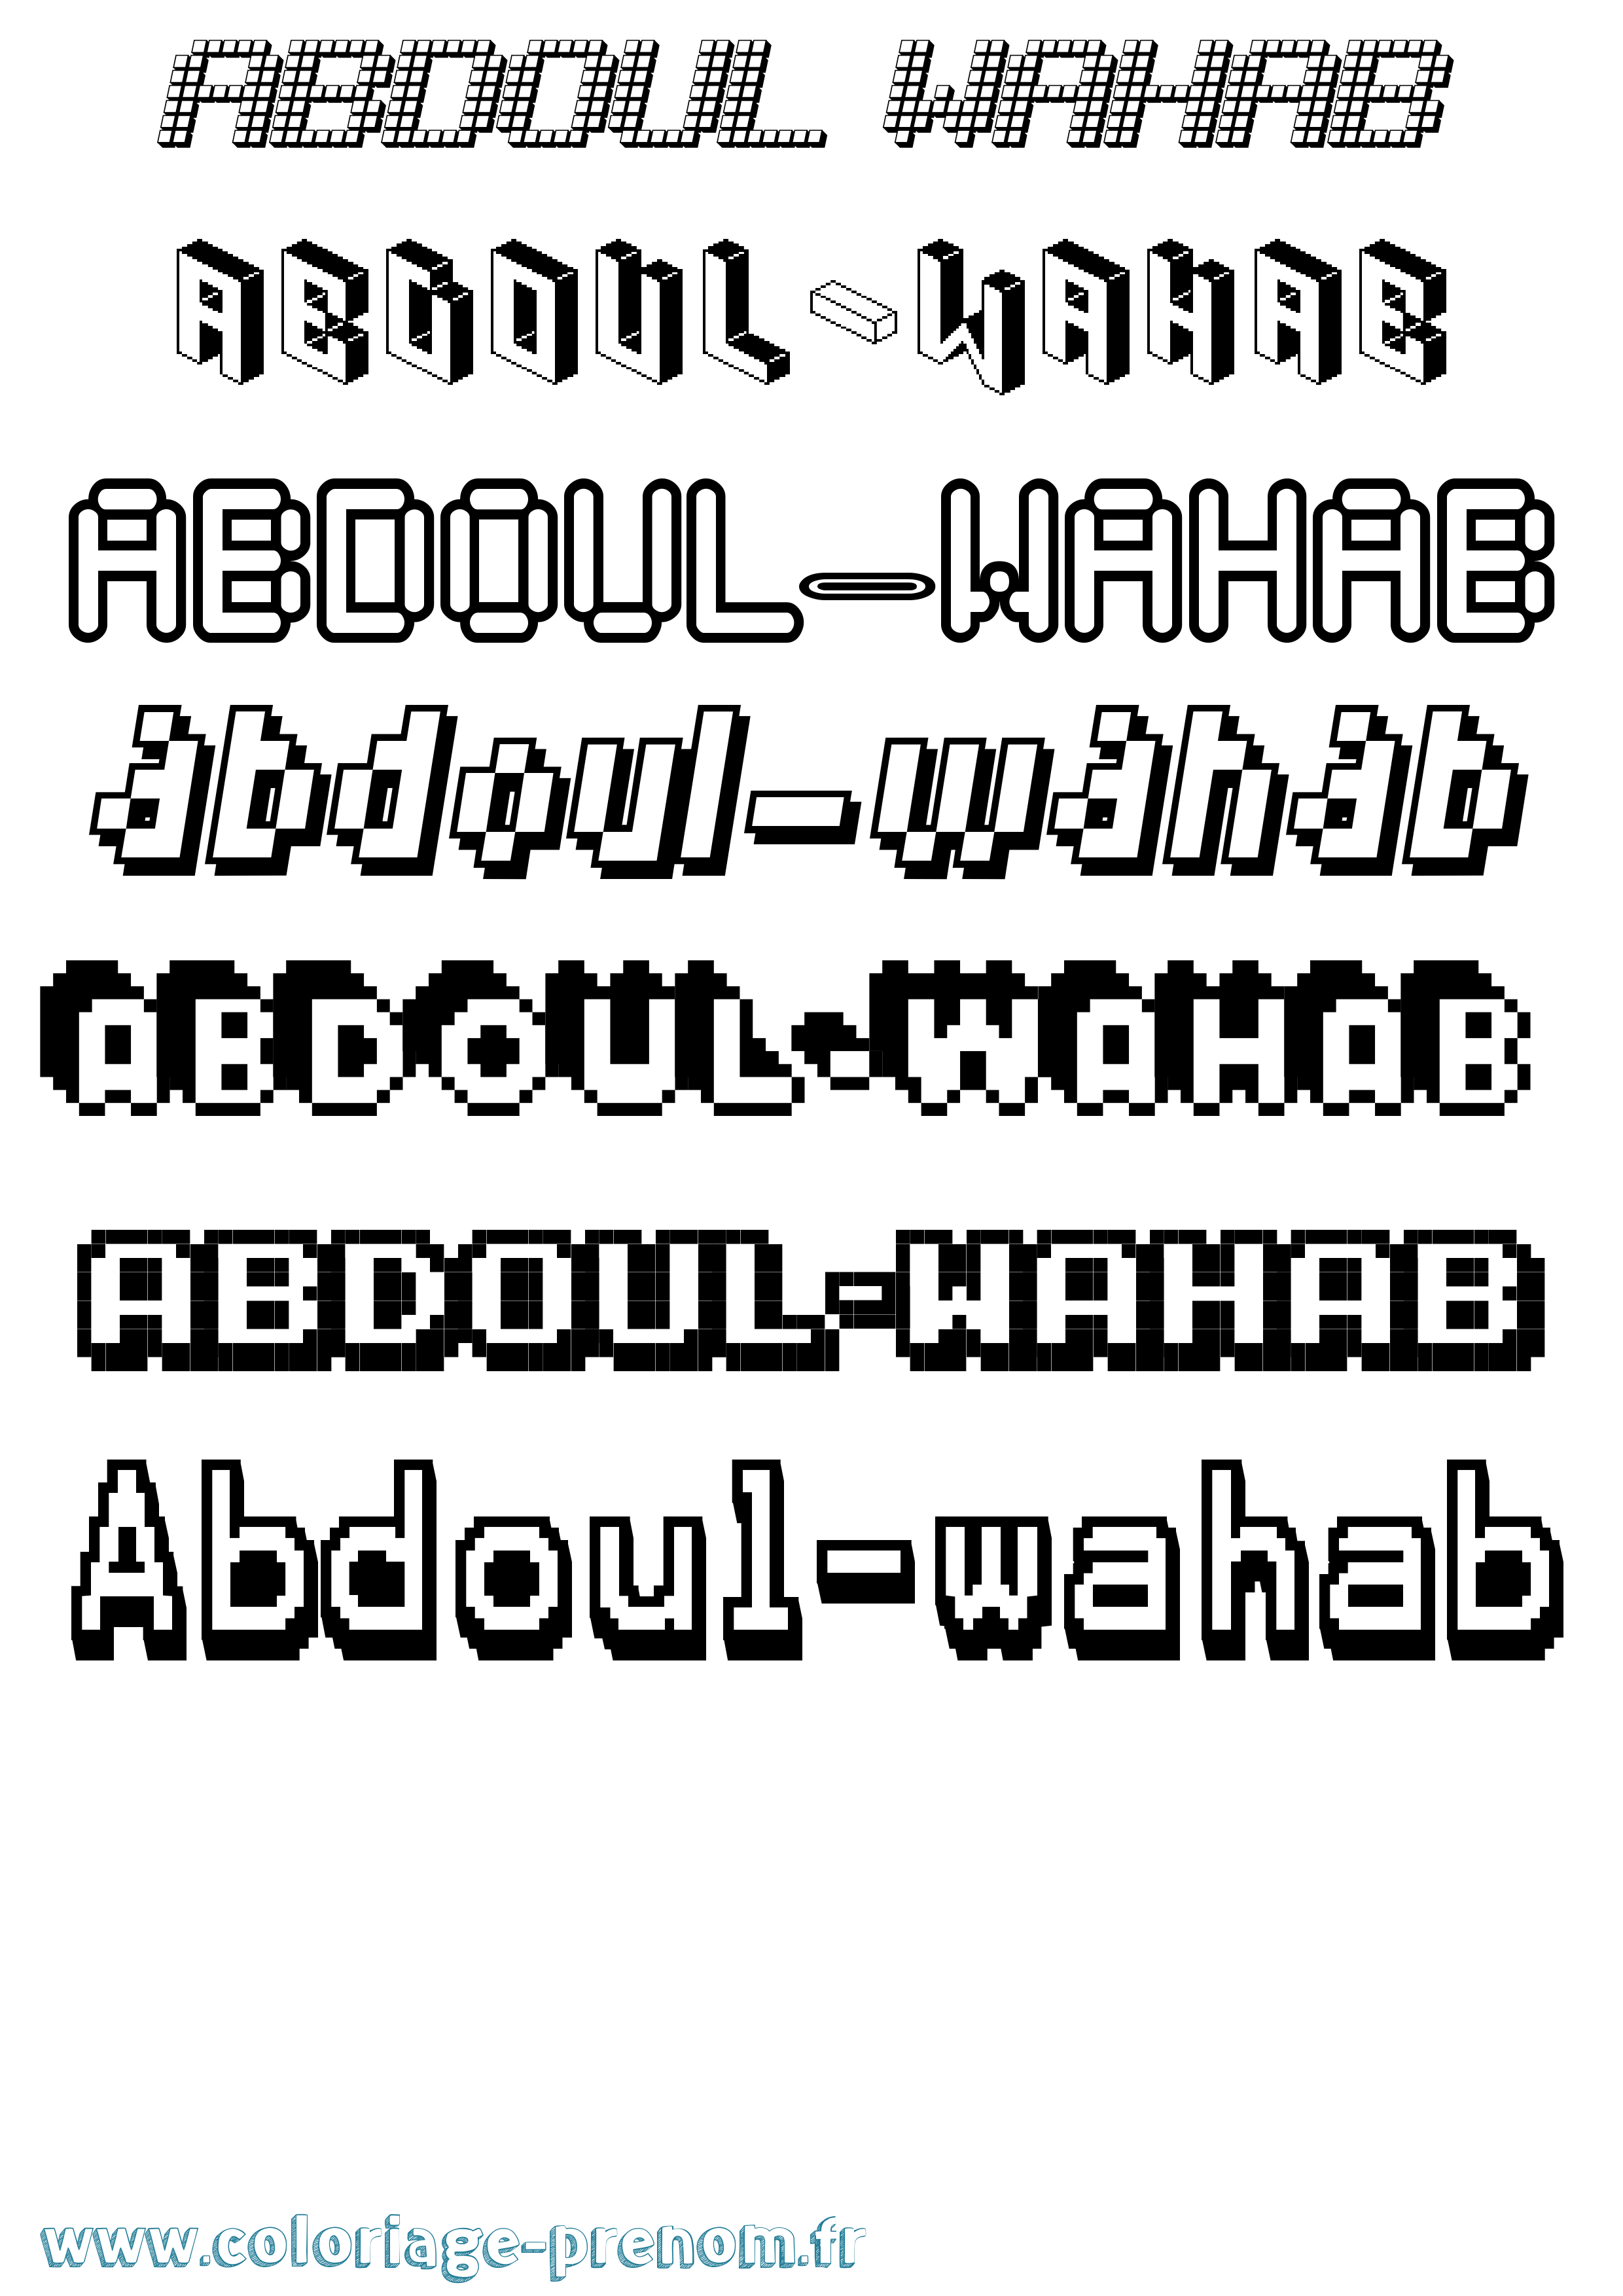 Coloriage prénom Abdoul-Wahab Pixel